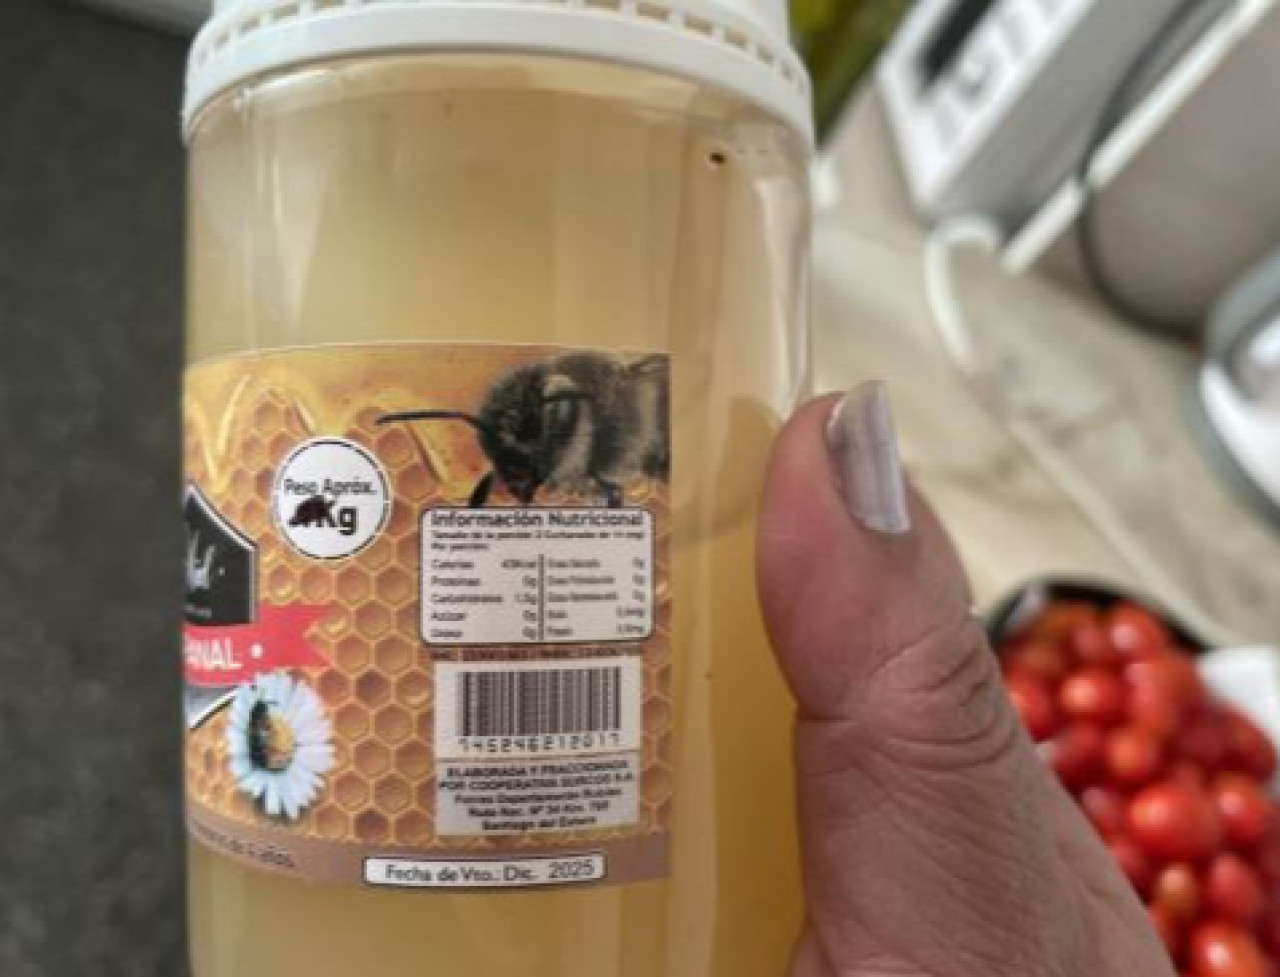 La marca de miel que fue prohibida por la ANMAT. Foto Boletín Oficial.